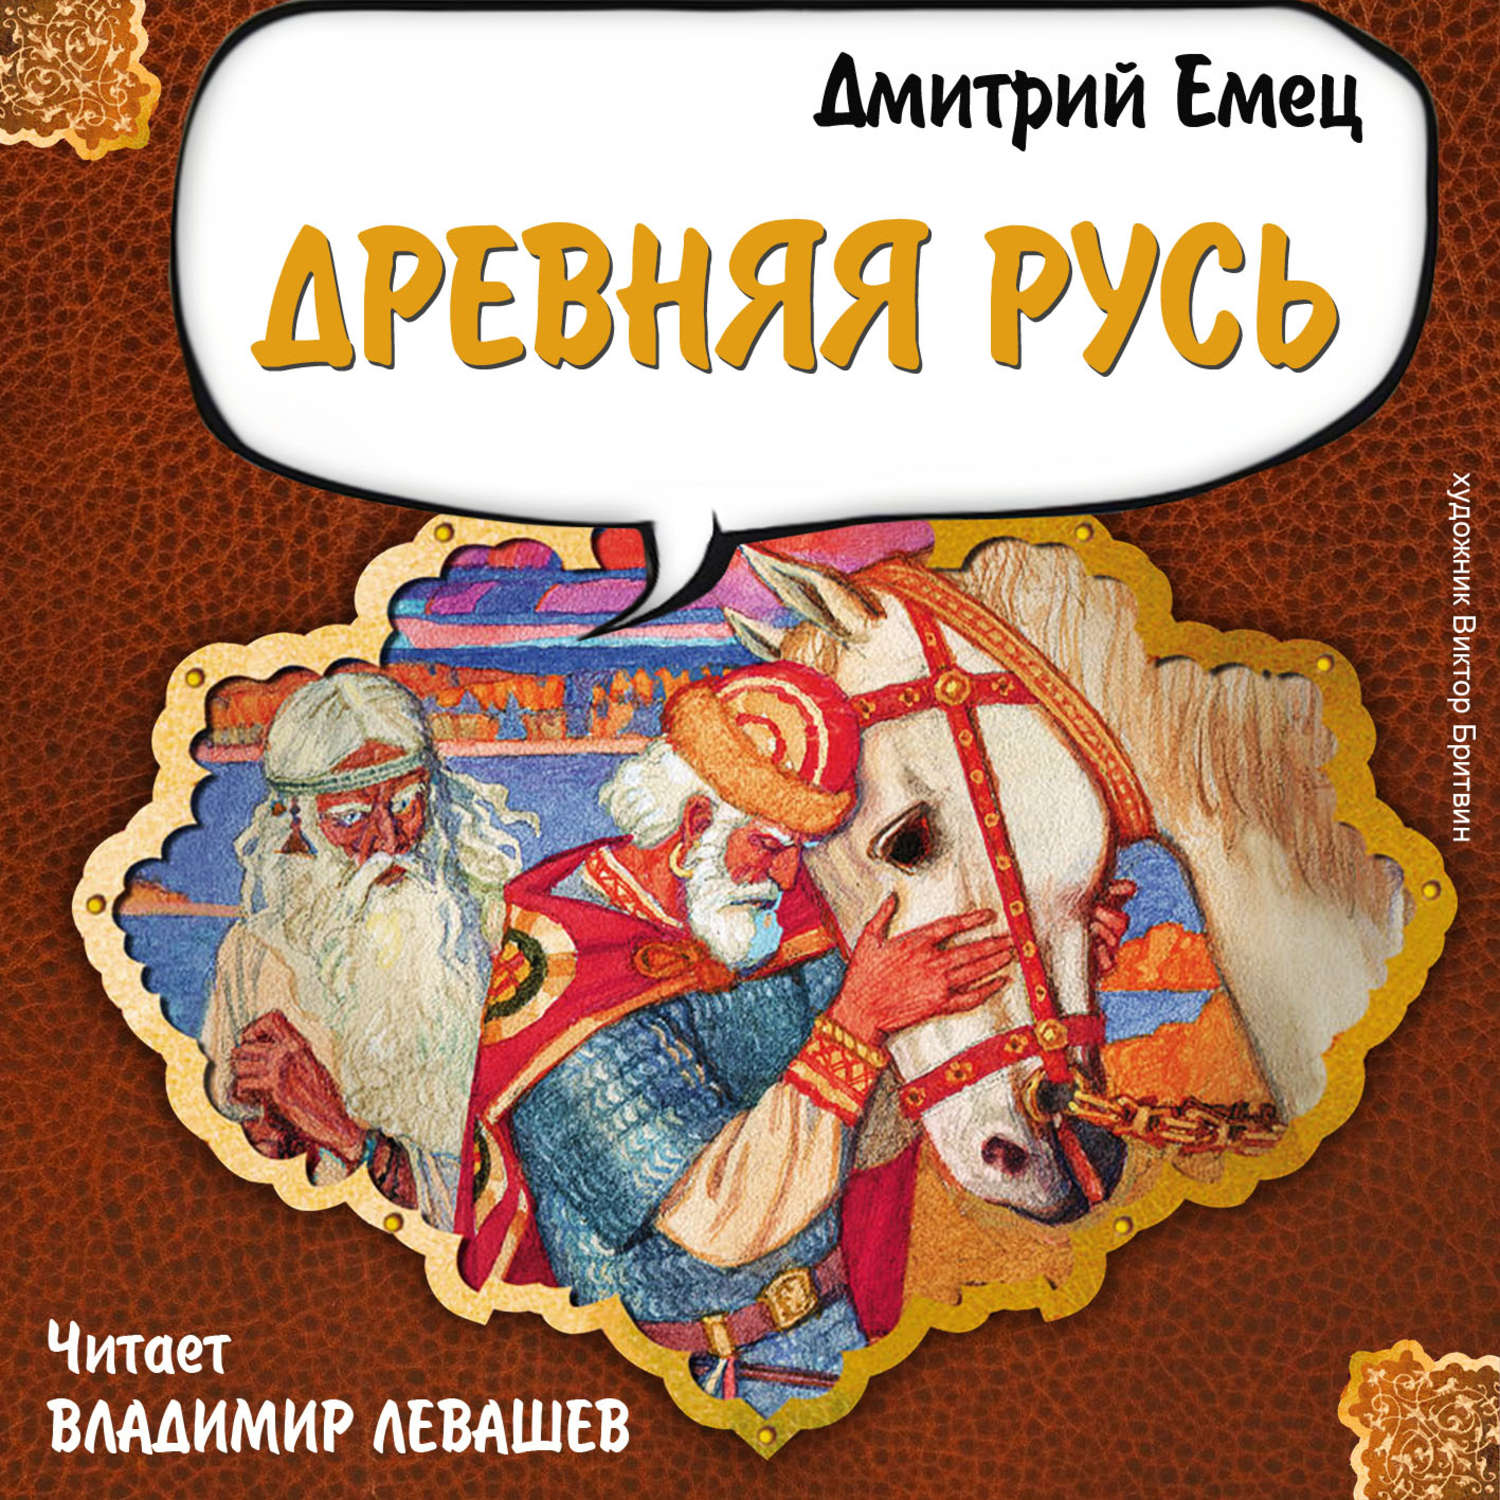 Аудиокнига древность. Книги о древней Руси для детей.